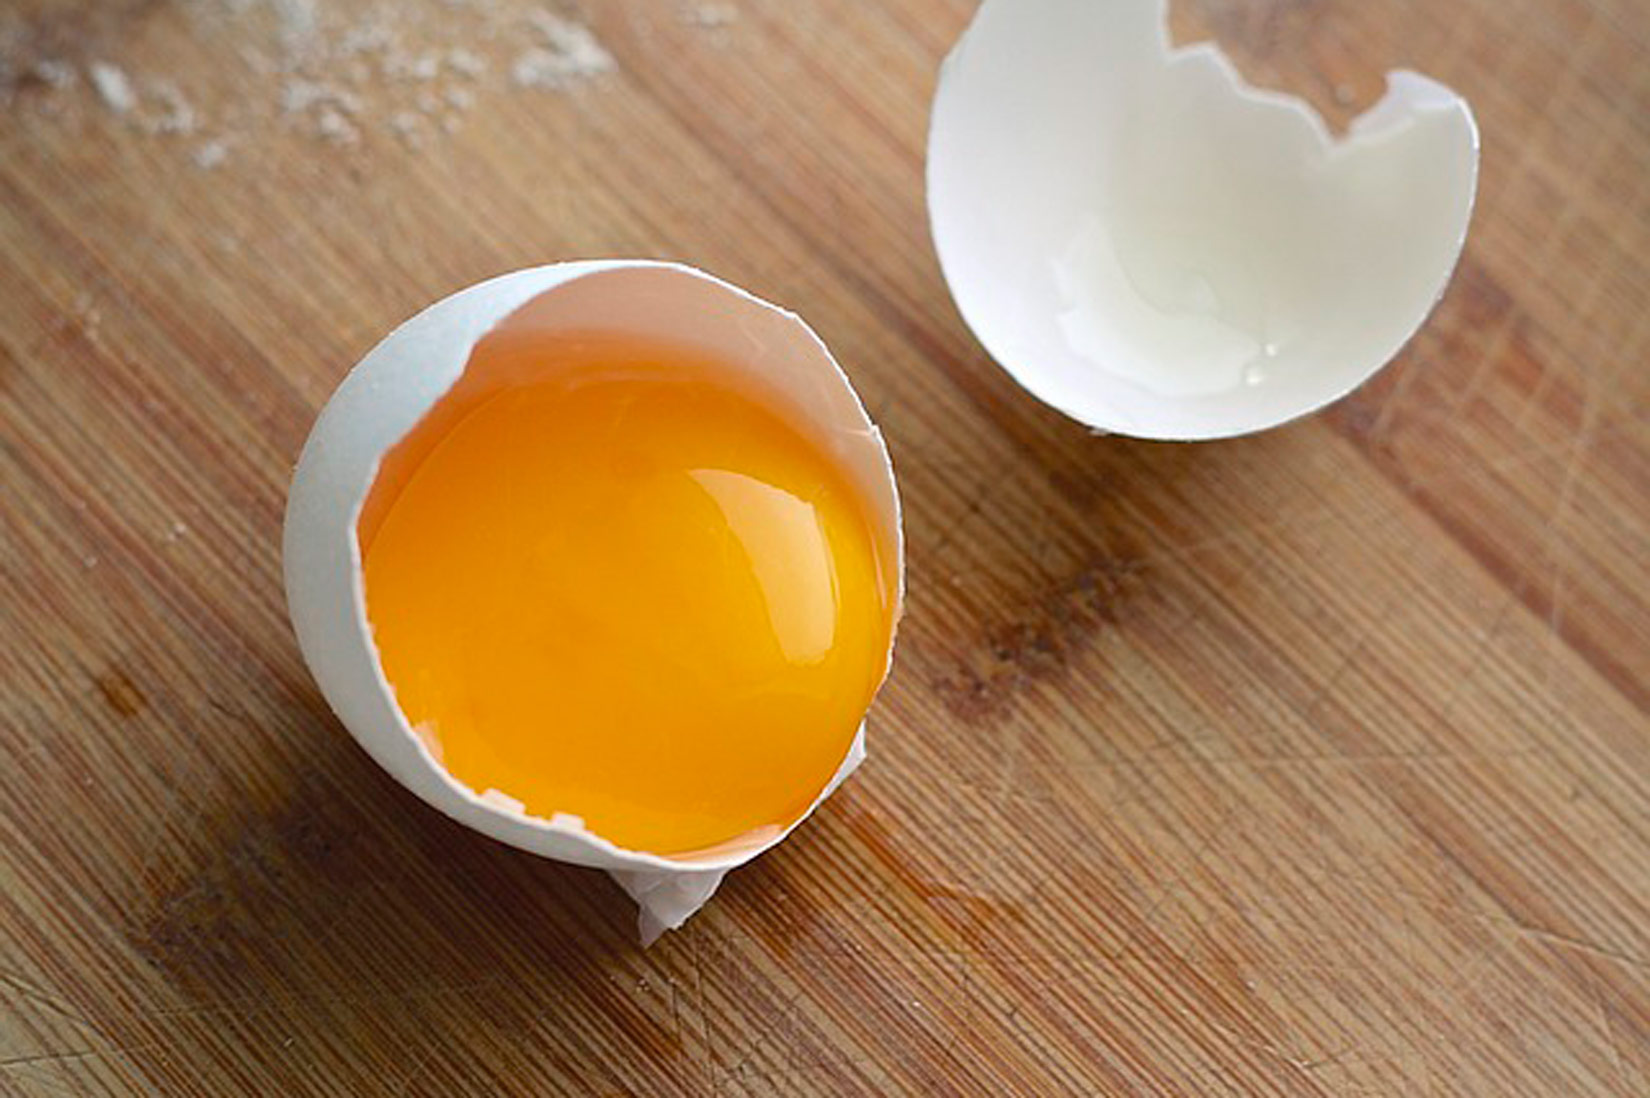 Na slici je razbijeno jaje u krupnom planu. Vide se dva dijela ljuske, jedan je prazan, a u drugom je žumanjak.